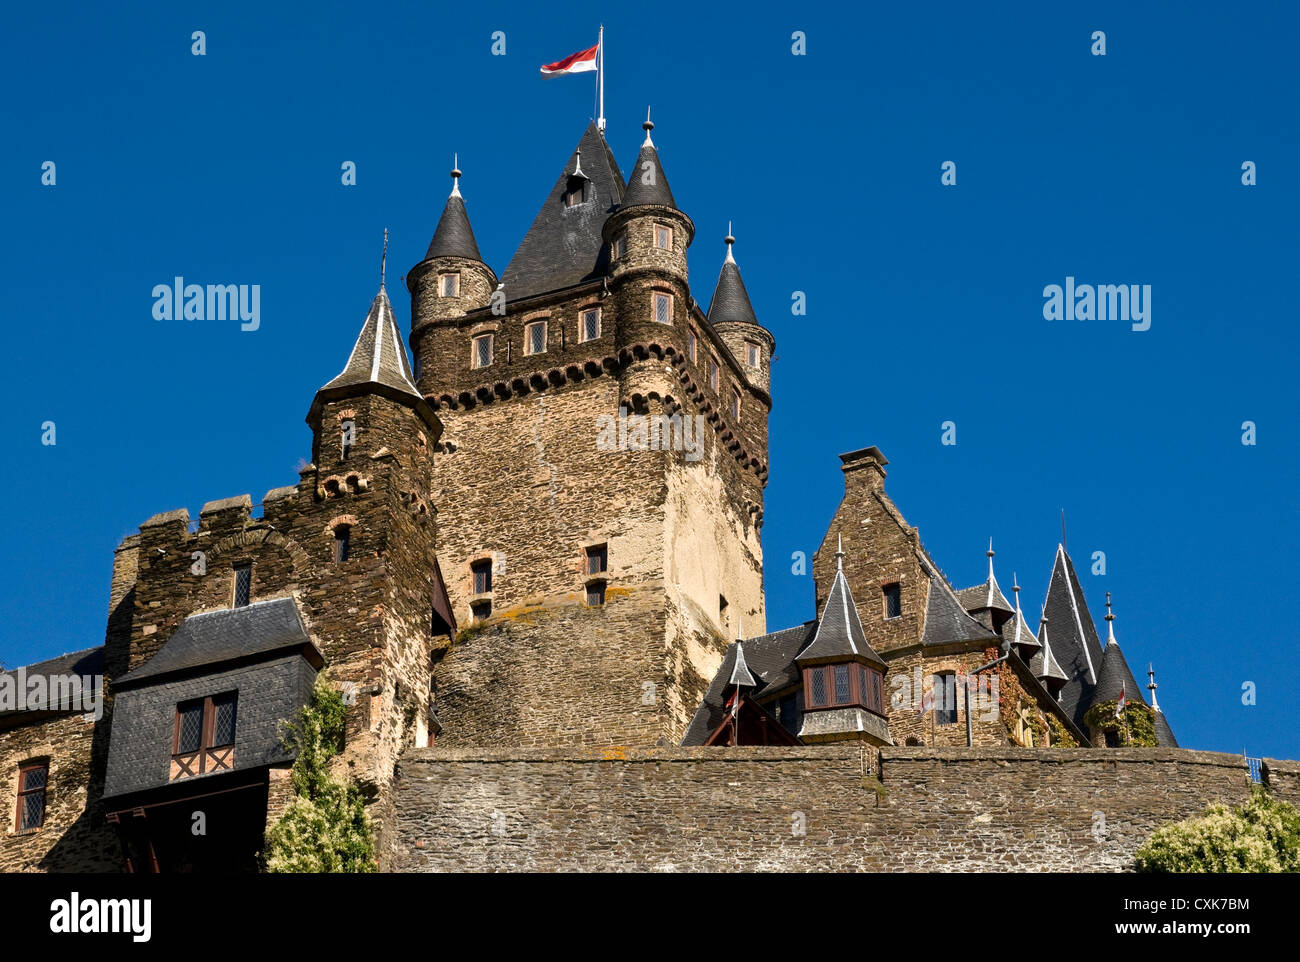 Le château de Cochem, vallée de la Moselle, en Allemagne. Banque D'Images